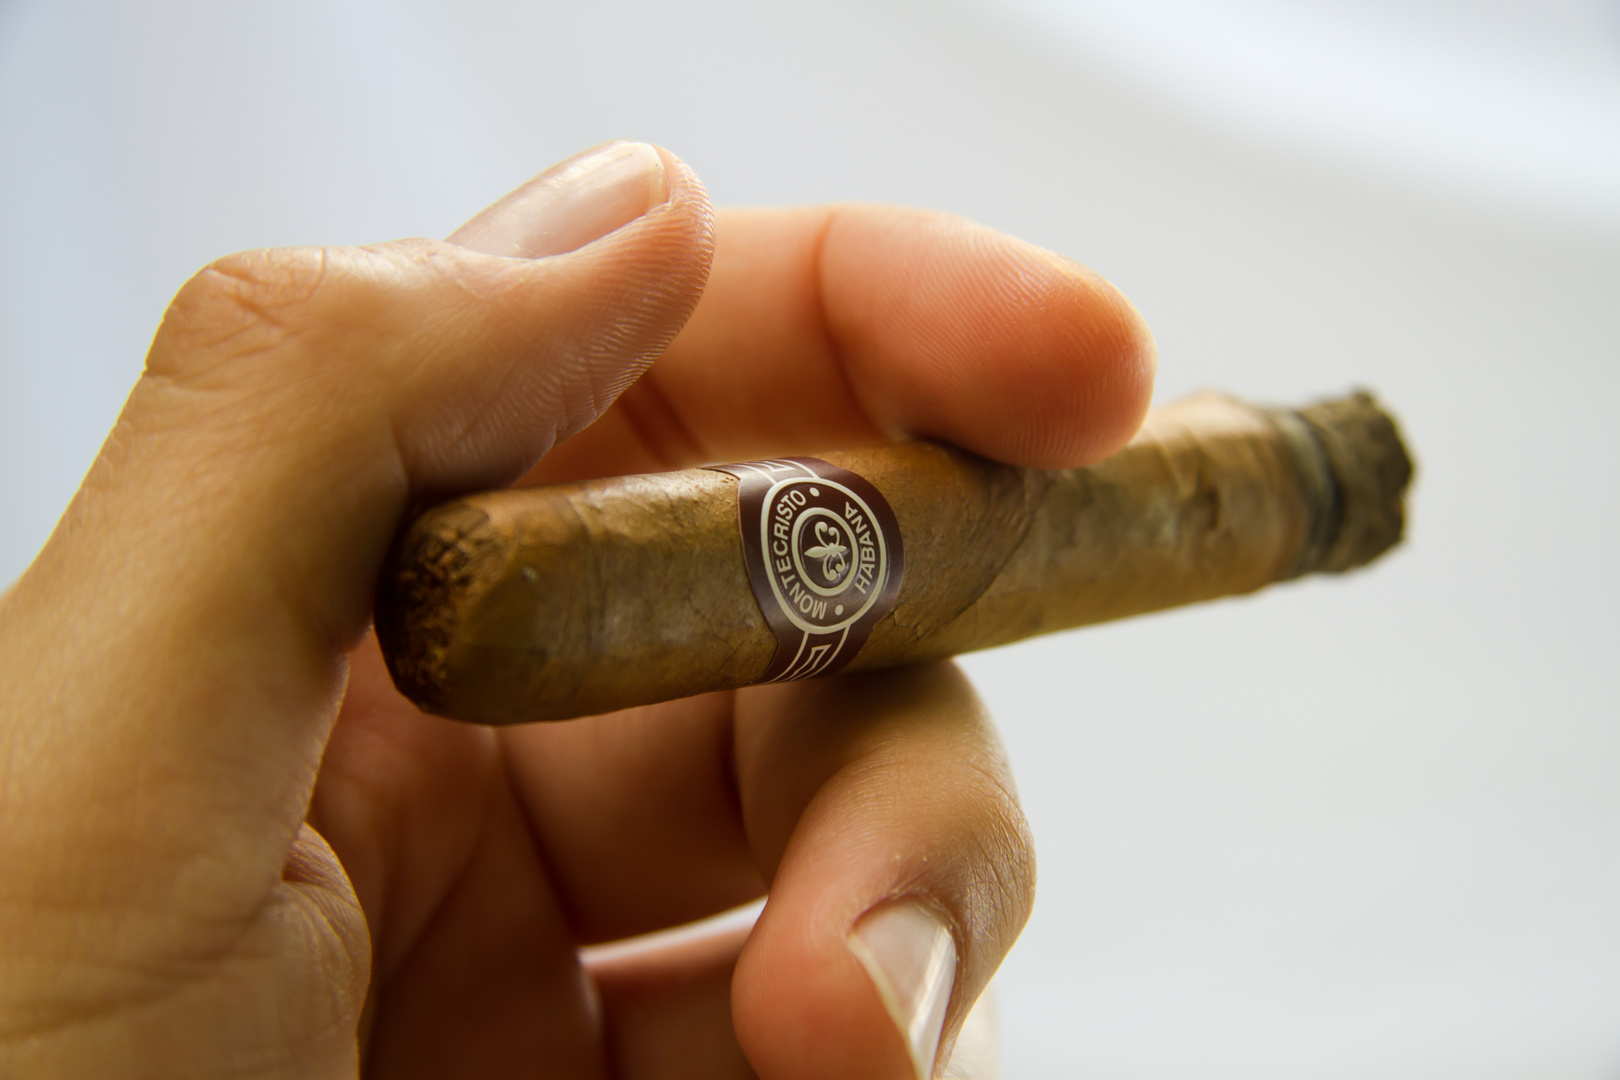 Montecristo Cigar